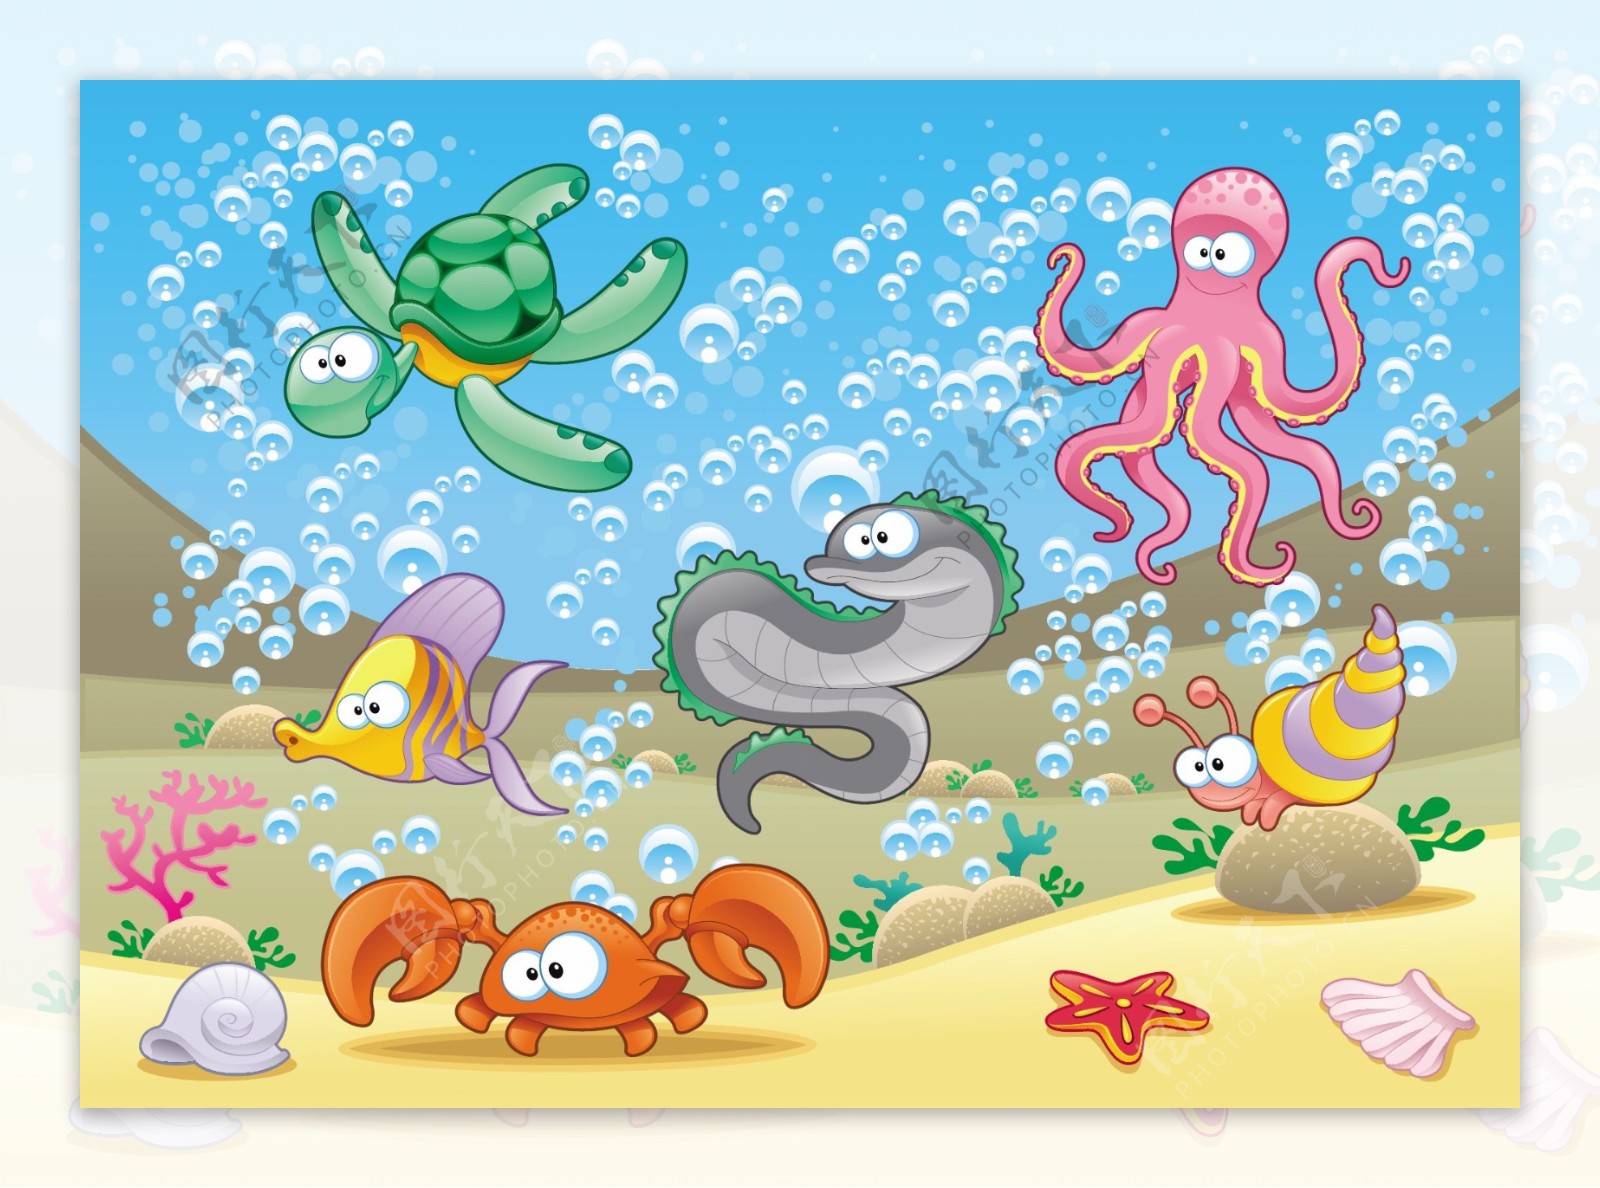 矢量卡通海底生物可爱图片